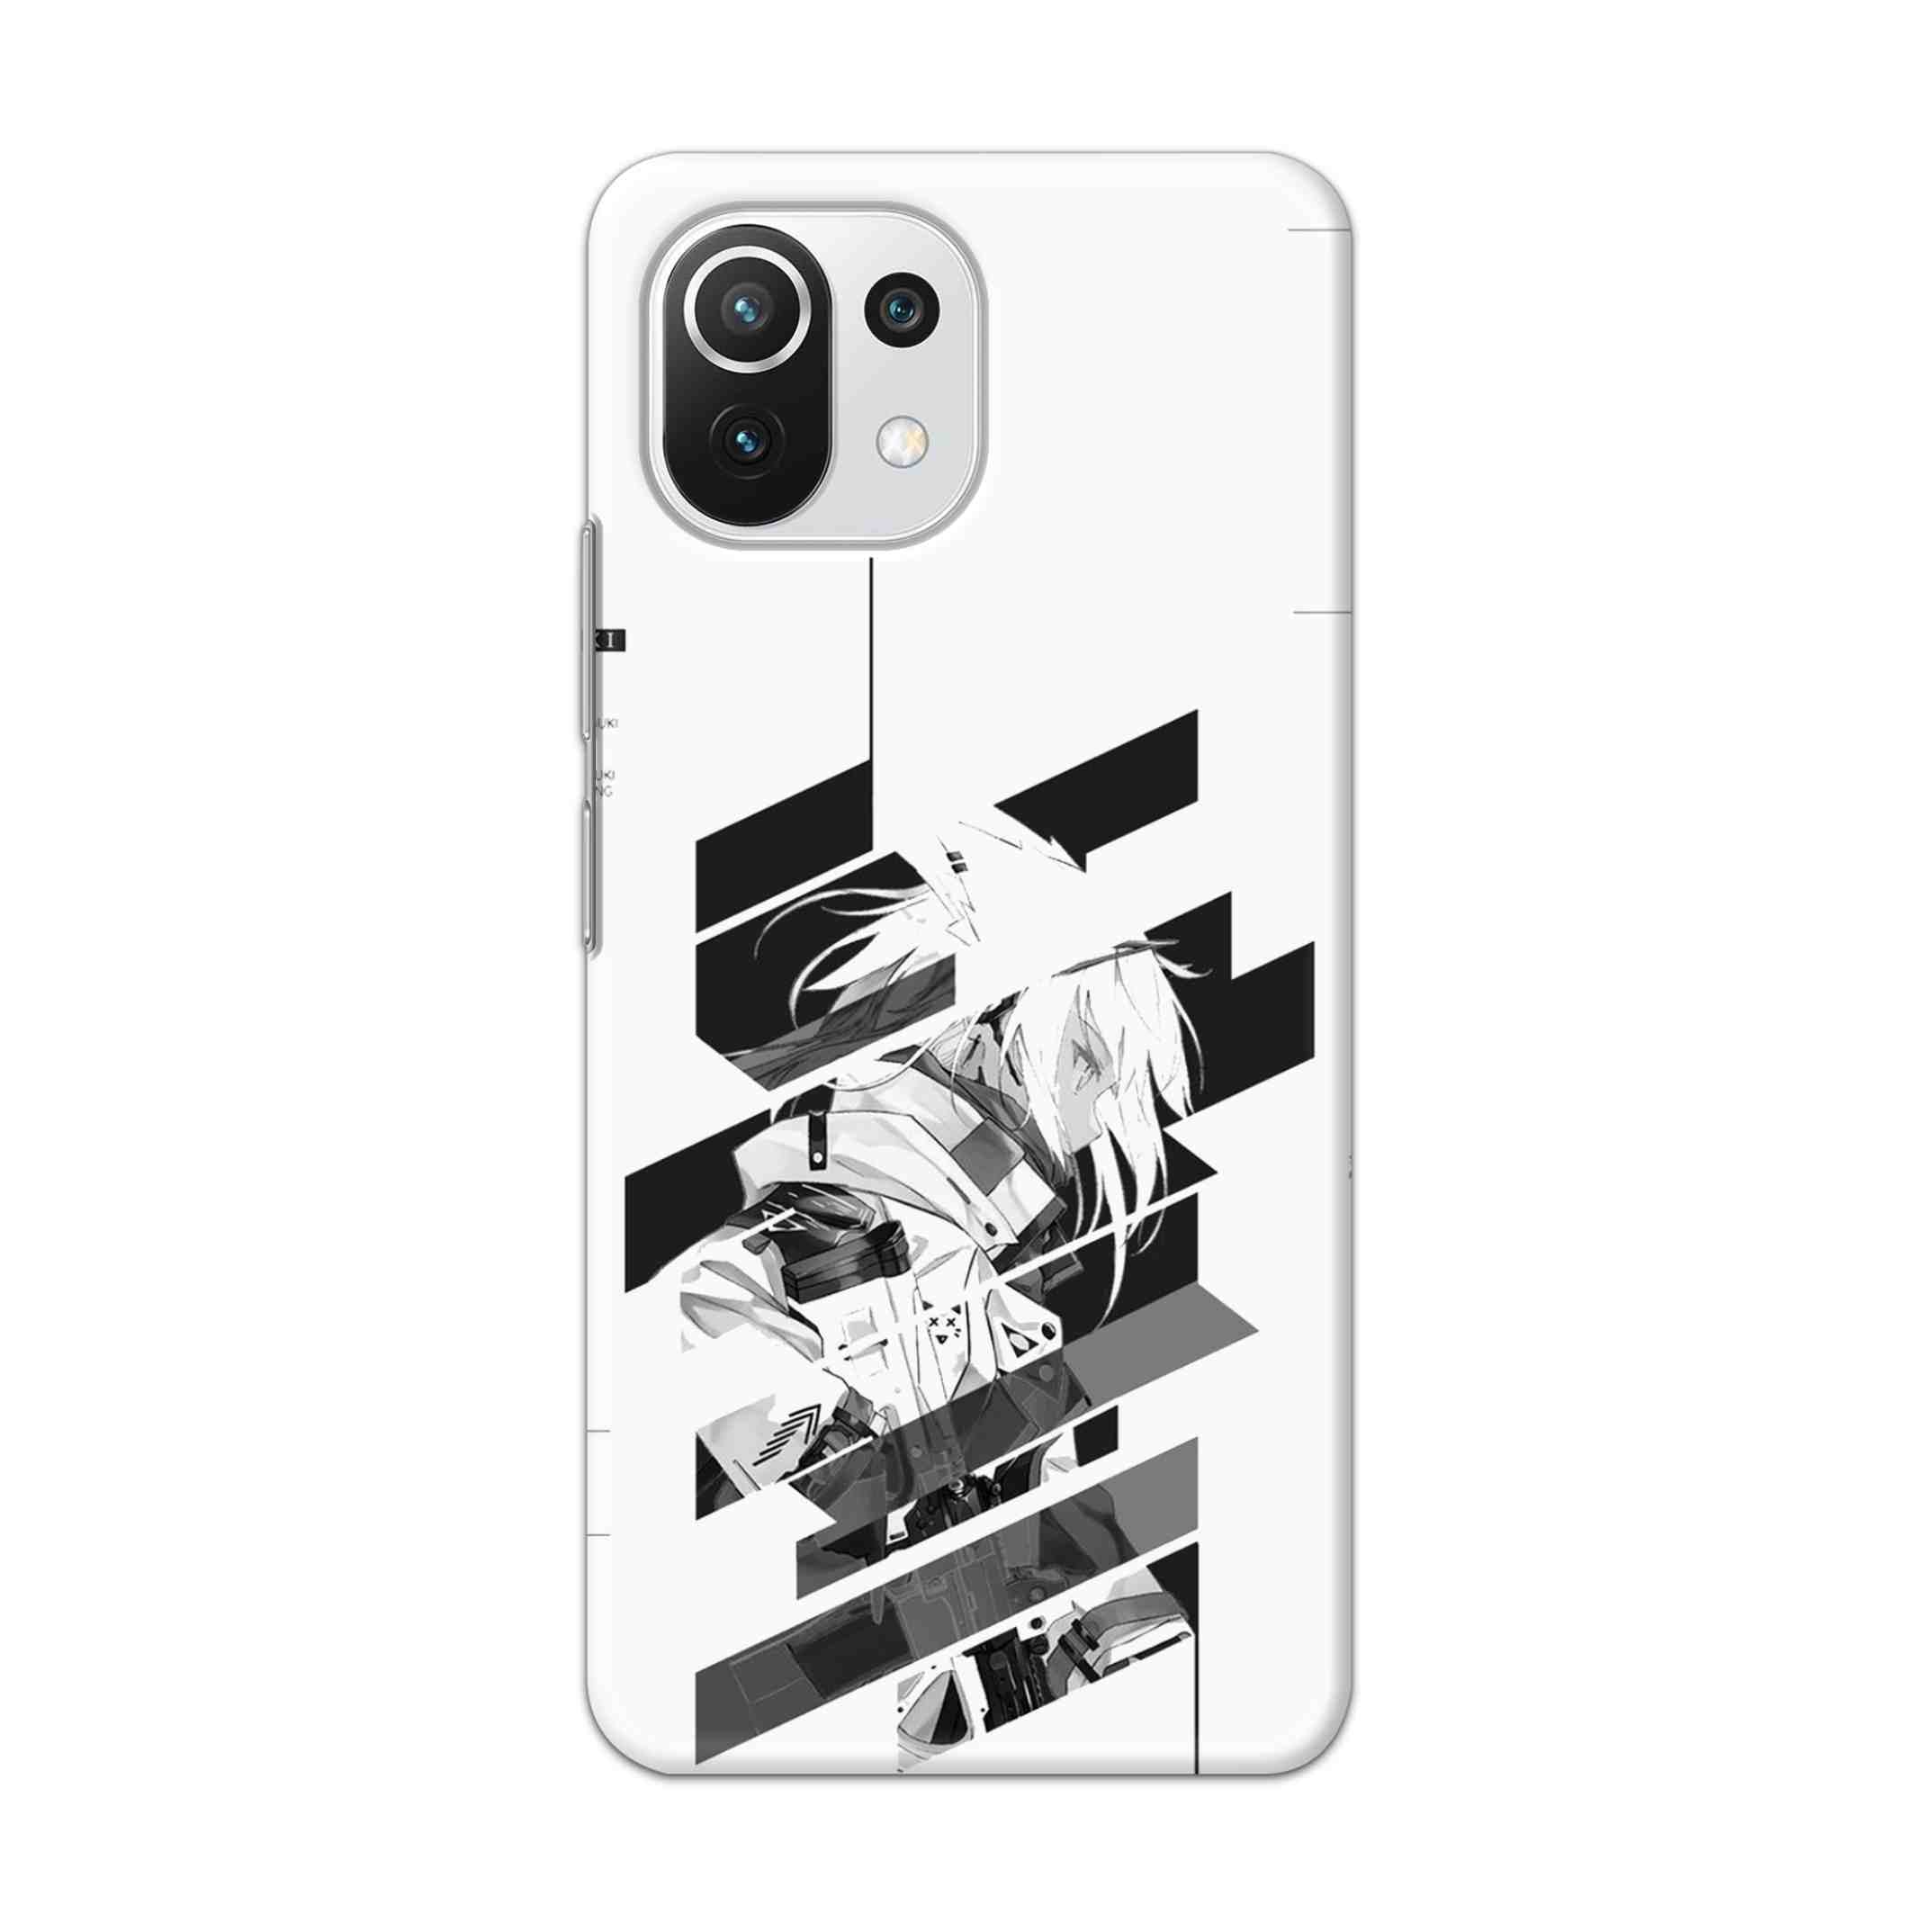 Buy Fubuki Hard Back Mobile Phone Case Cover For Mi 11 Lite NE 5G Online